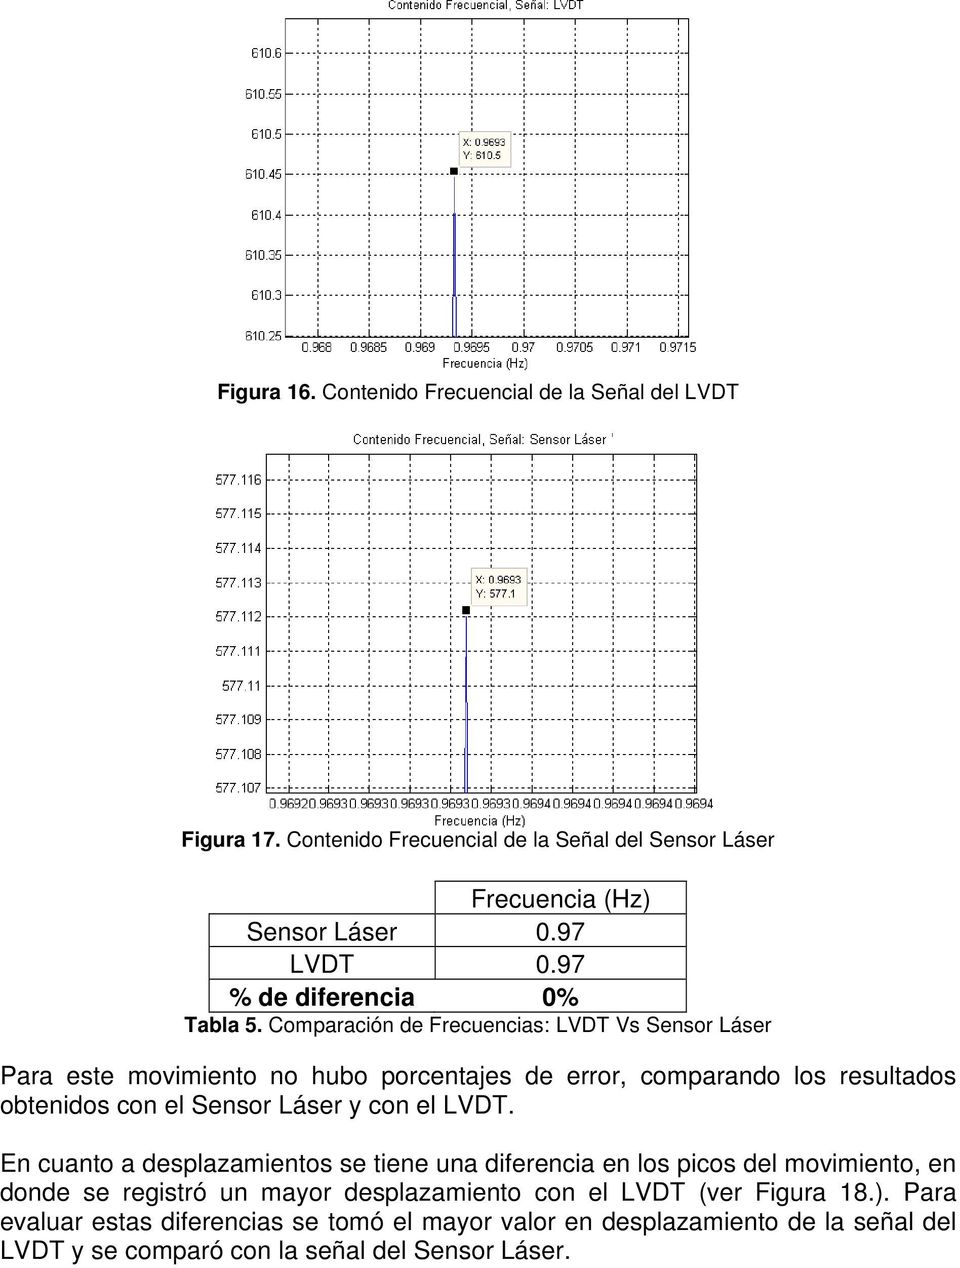 Comparación de Frecuencias: LVDT Vs Sensor Láser Para este movimiento no hubo porcentajes de error, comparando los resultados obtenidos con el Sensor Láser y con